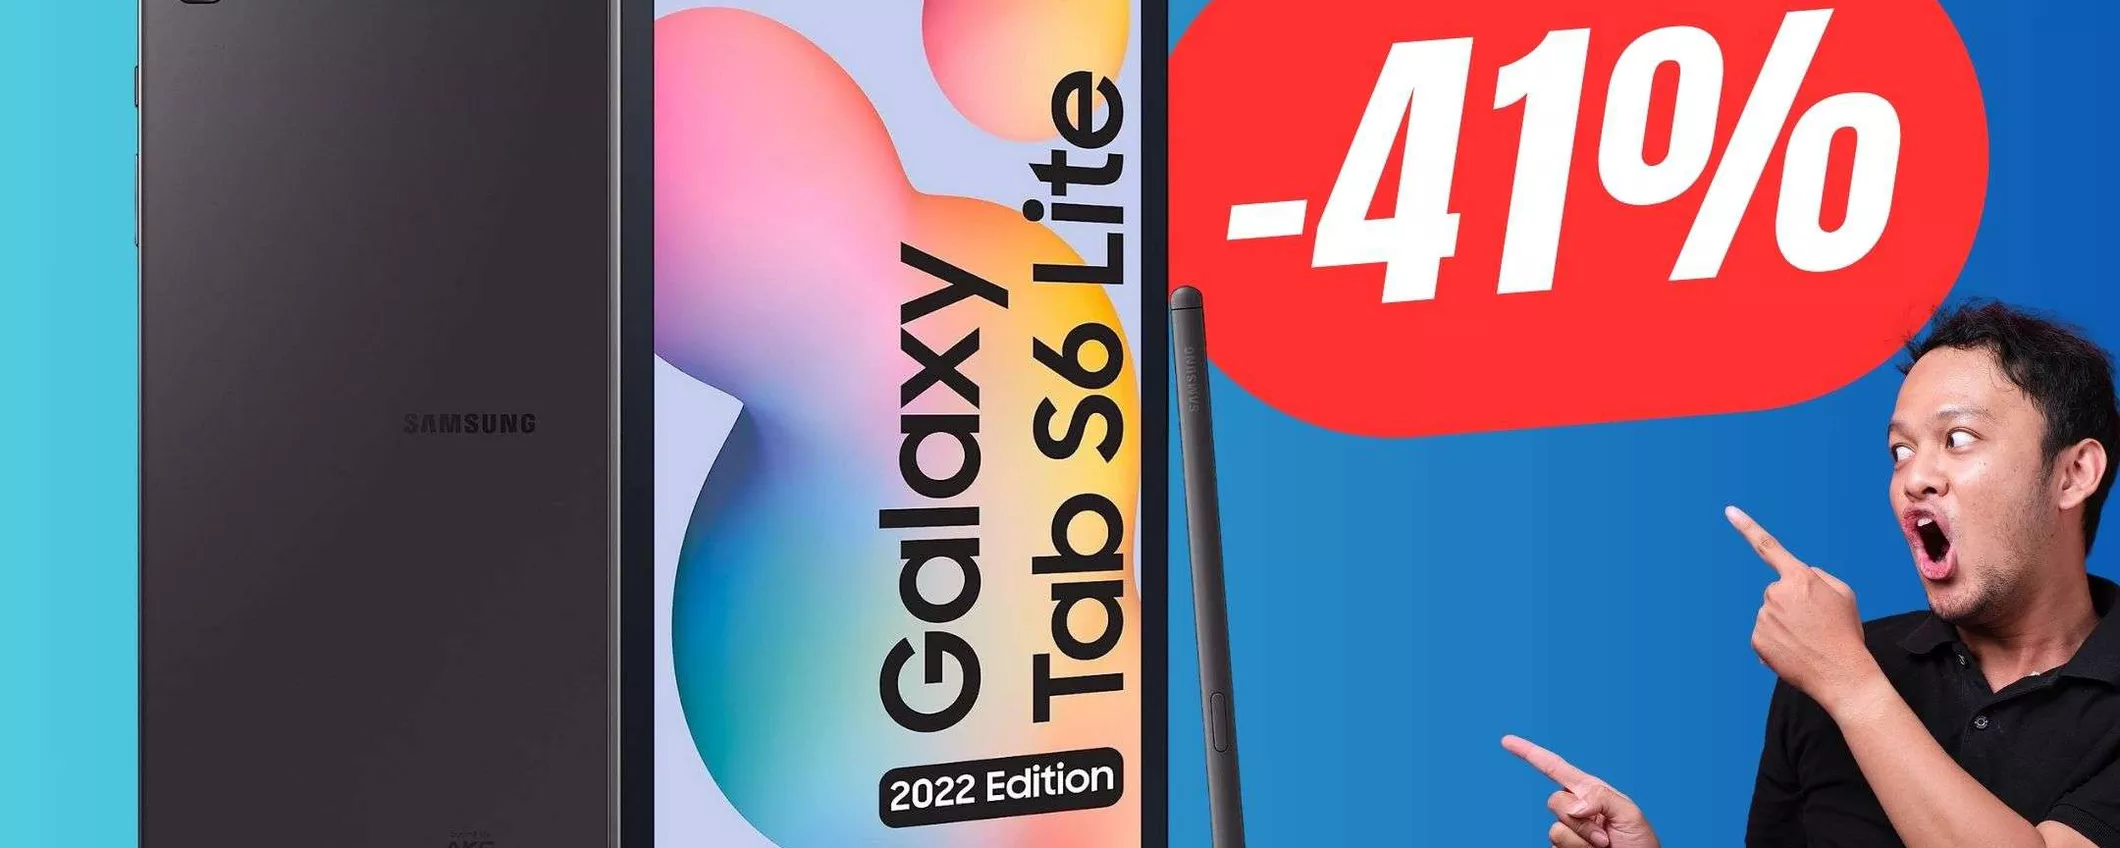 Questo Tablet Samsung è perfetto a questo prezzo (e ha anche la PENNA!)